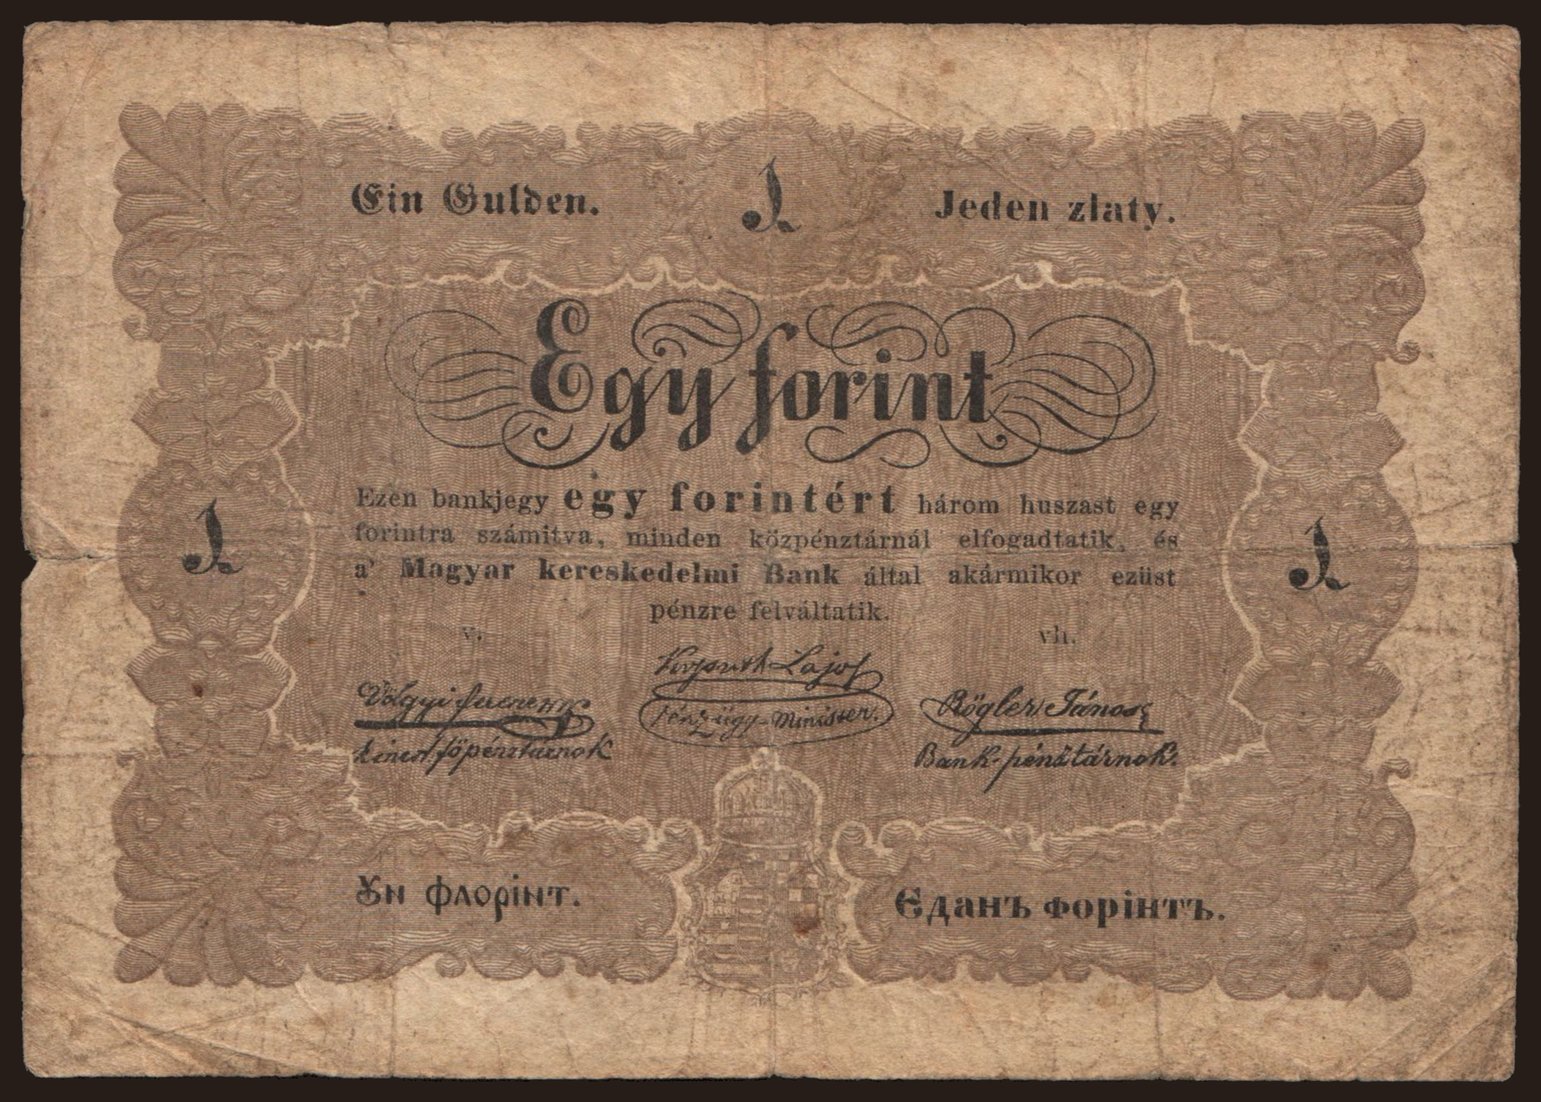 1 forint, 1848